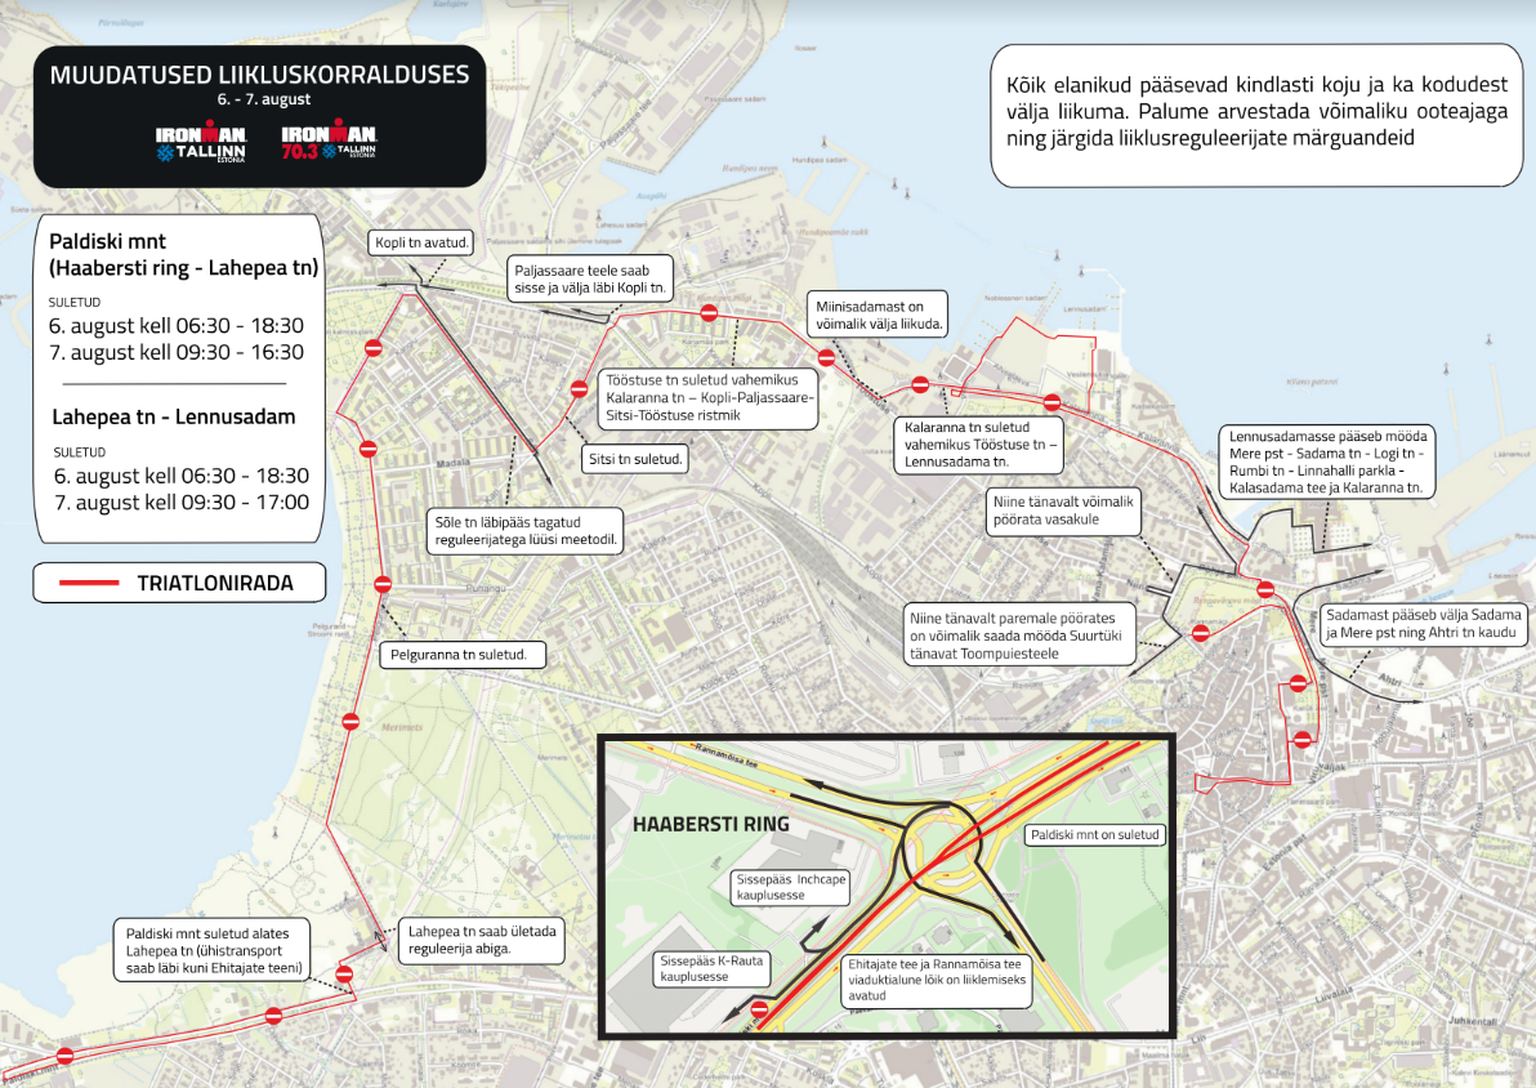 Перекрытые участки и схема движения на время проведения триатлона Ironman.